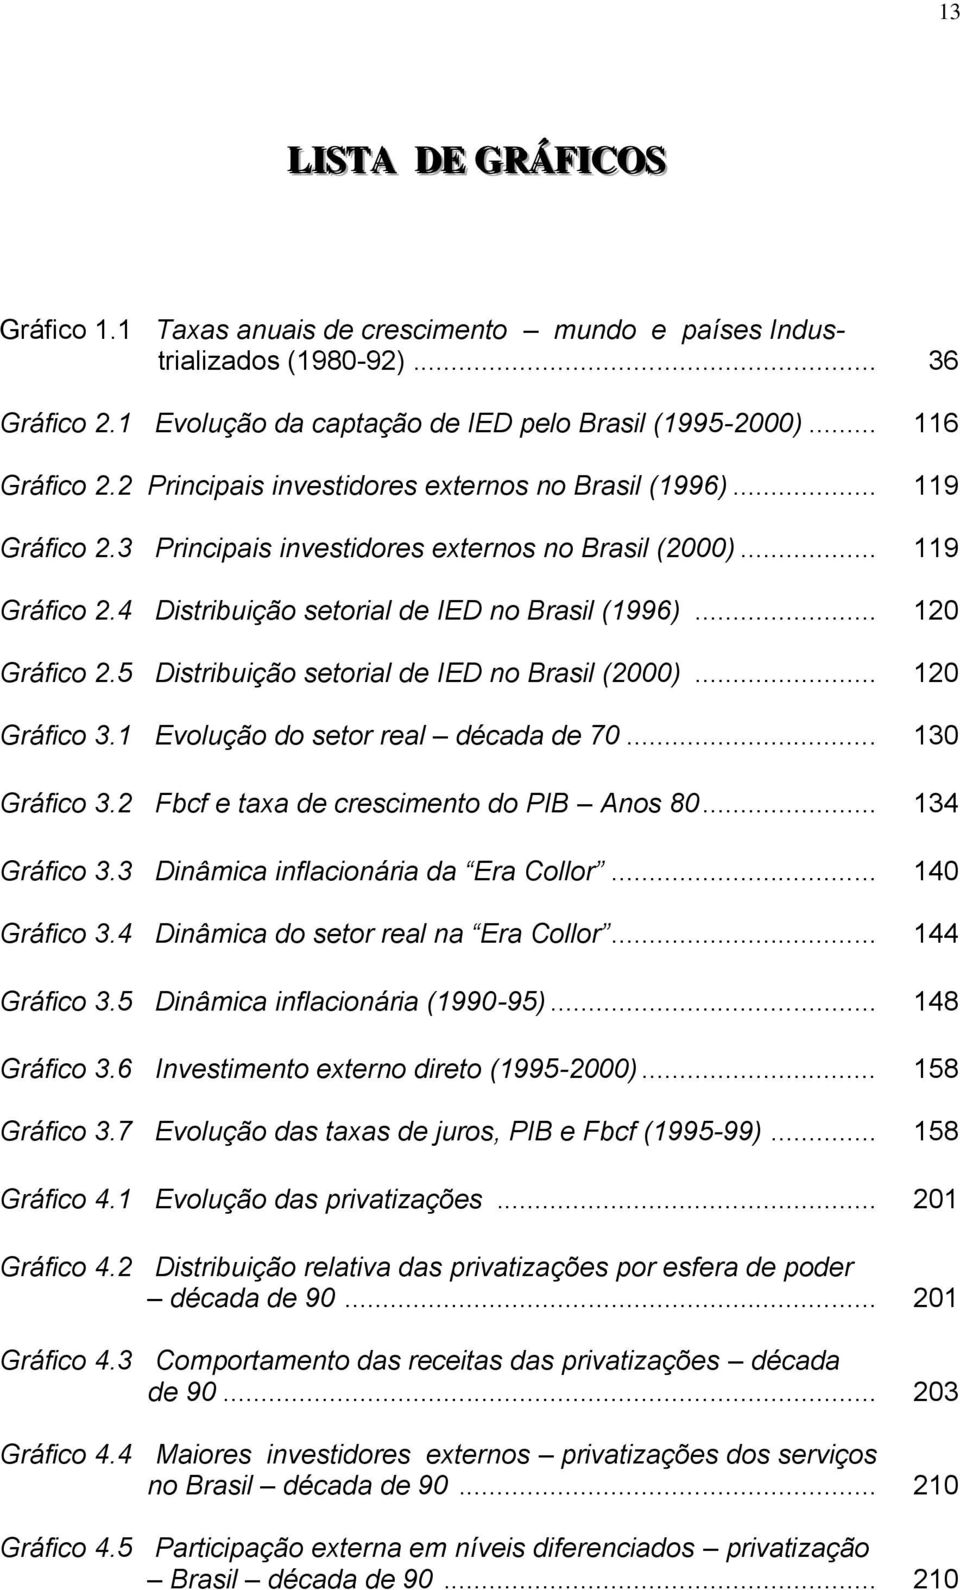 .. 120 Gráfico 2.5 Distribuição setorial de IED no Brasil (2000)... 120 Gráfico 3.1 Evolução do setor real década de 70... 130 Gráfico 3.2 Fbcf e taxa de crescimento do PIB Anos 80... 134 Gráfico 3.